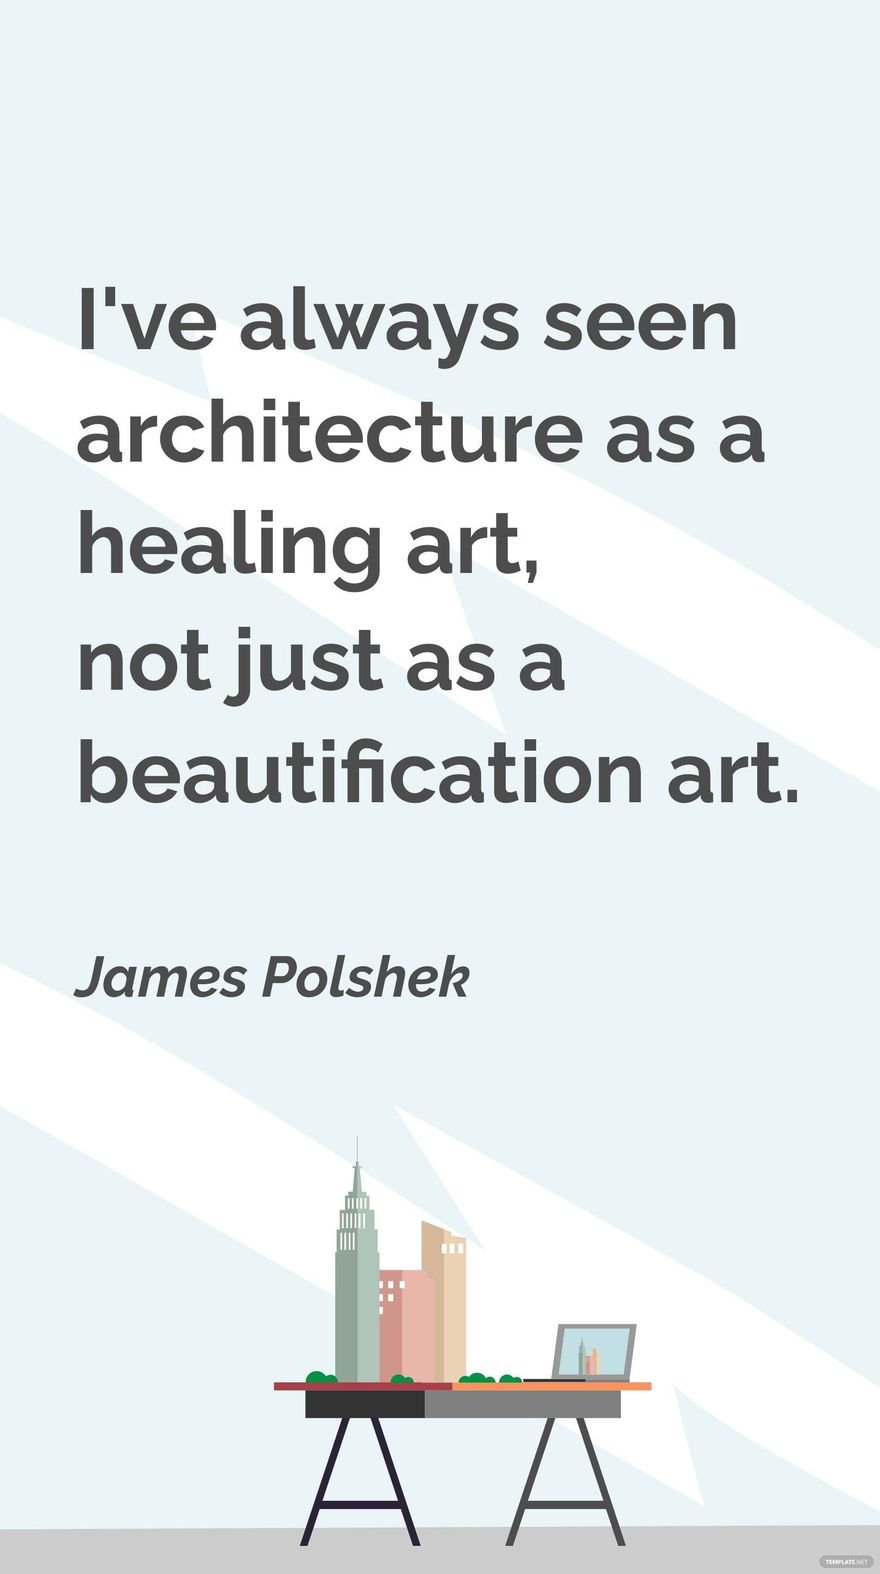 James Polshek - I've always seen architecture as a healing art, not just as a beautification art. in JPG